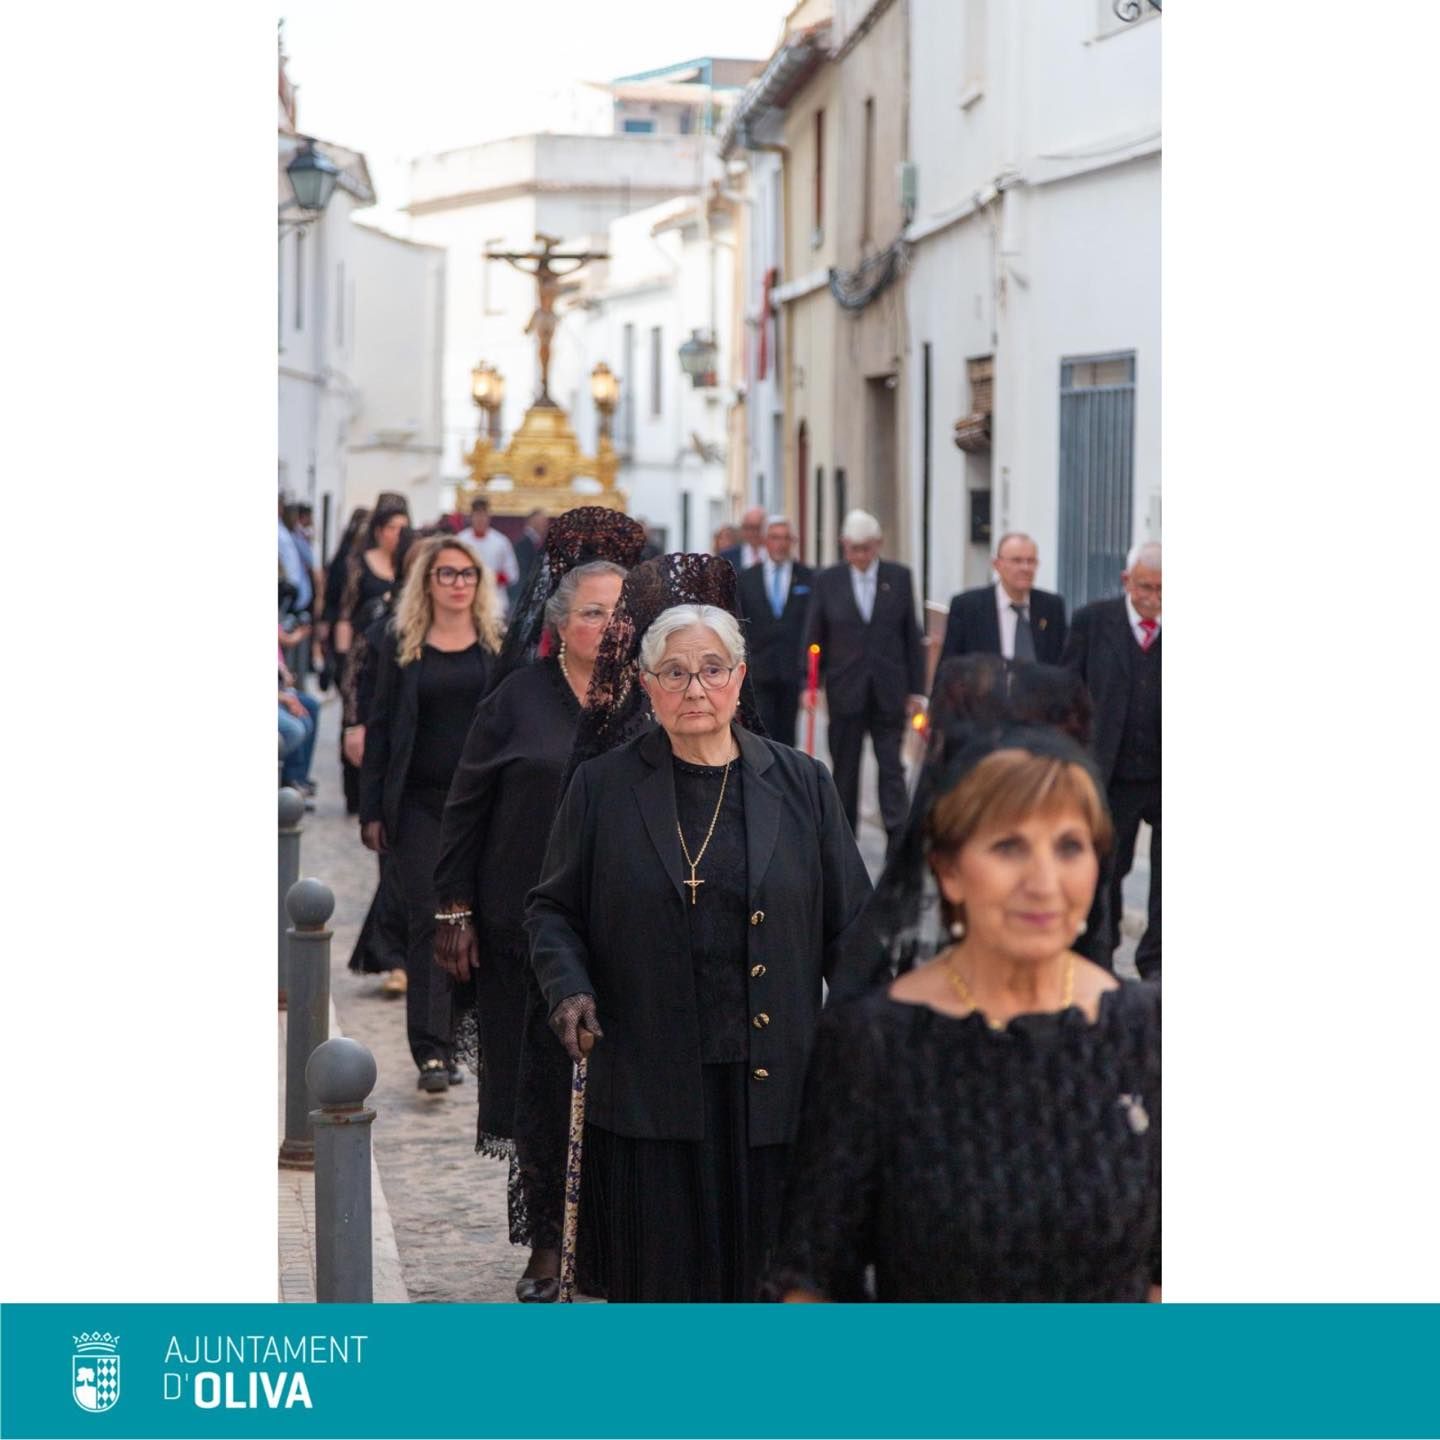 La fiesta del Crist de Sant Roc de Oliva, en imágenes